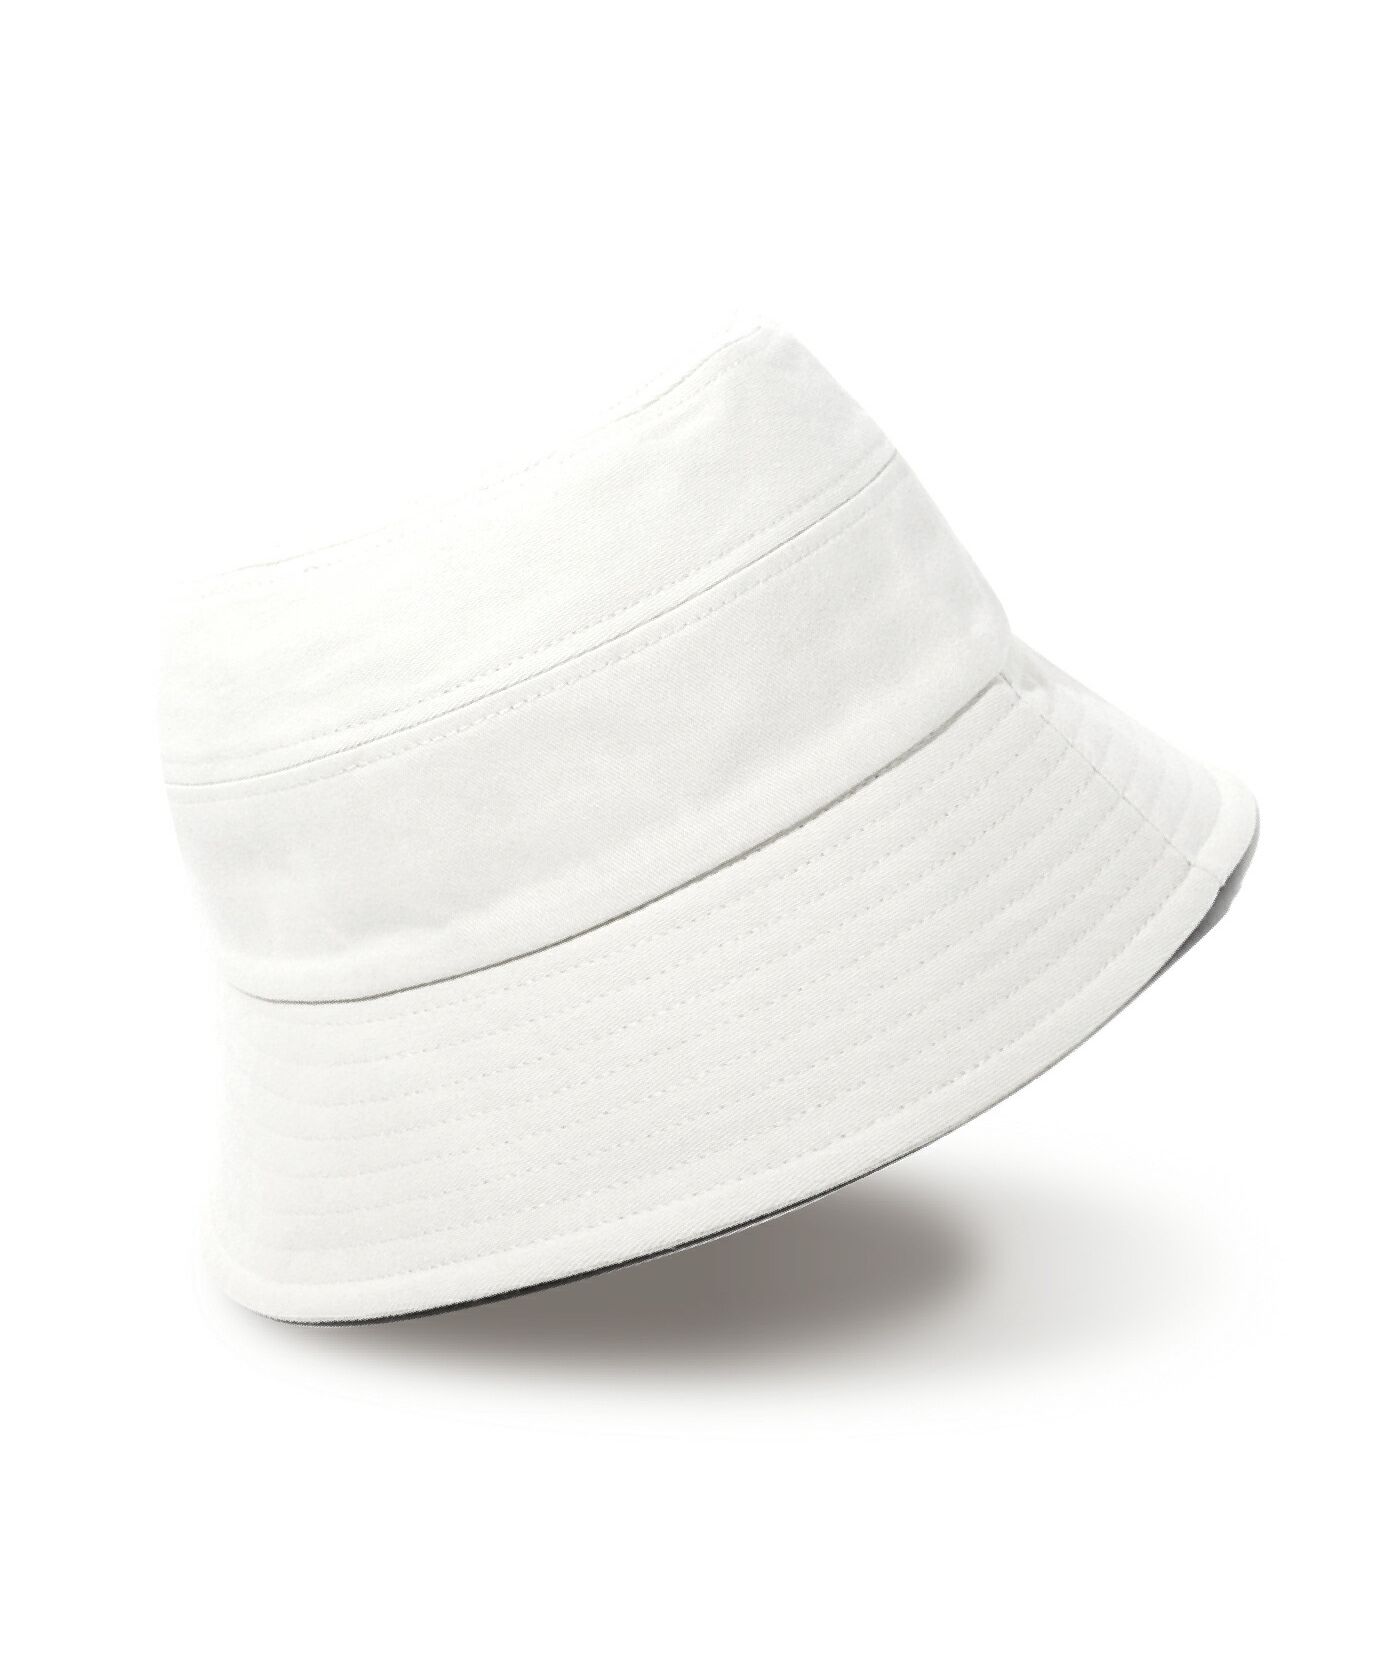 バケットハット 紐付き リボン付 無地 コットン レディース メンズ シンプル 帽子 トレンド UV対策 紫外線対策 グレージュ ブラック  チューリップハット (503944948) | エクレボ(exrevo) - MAGASEEK